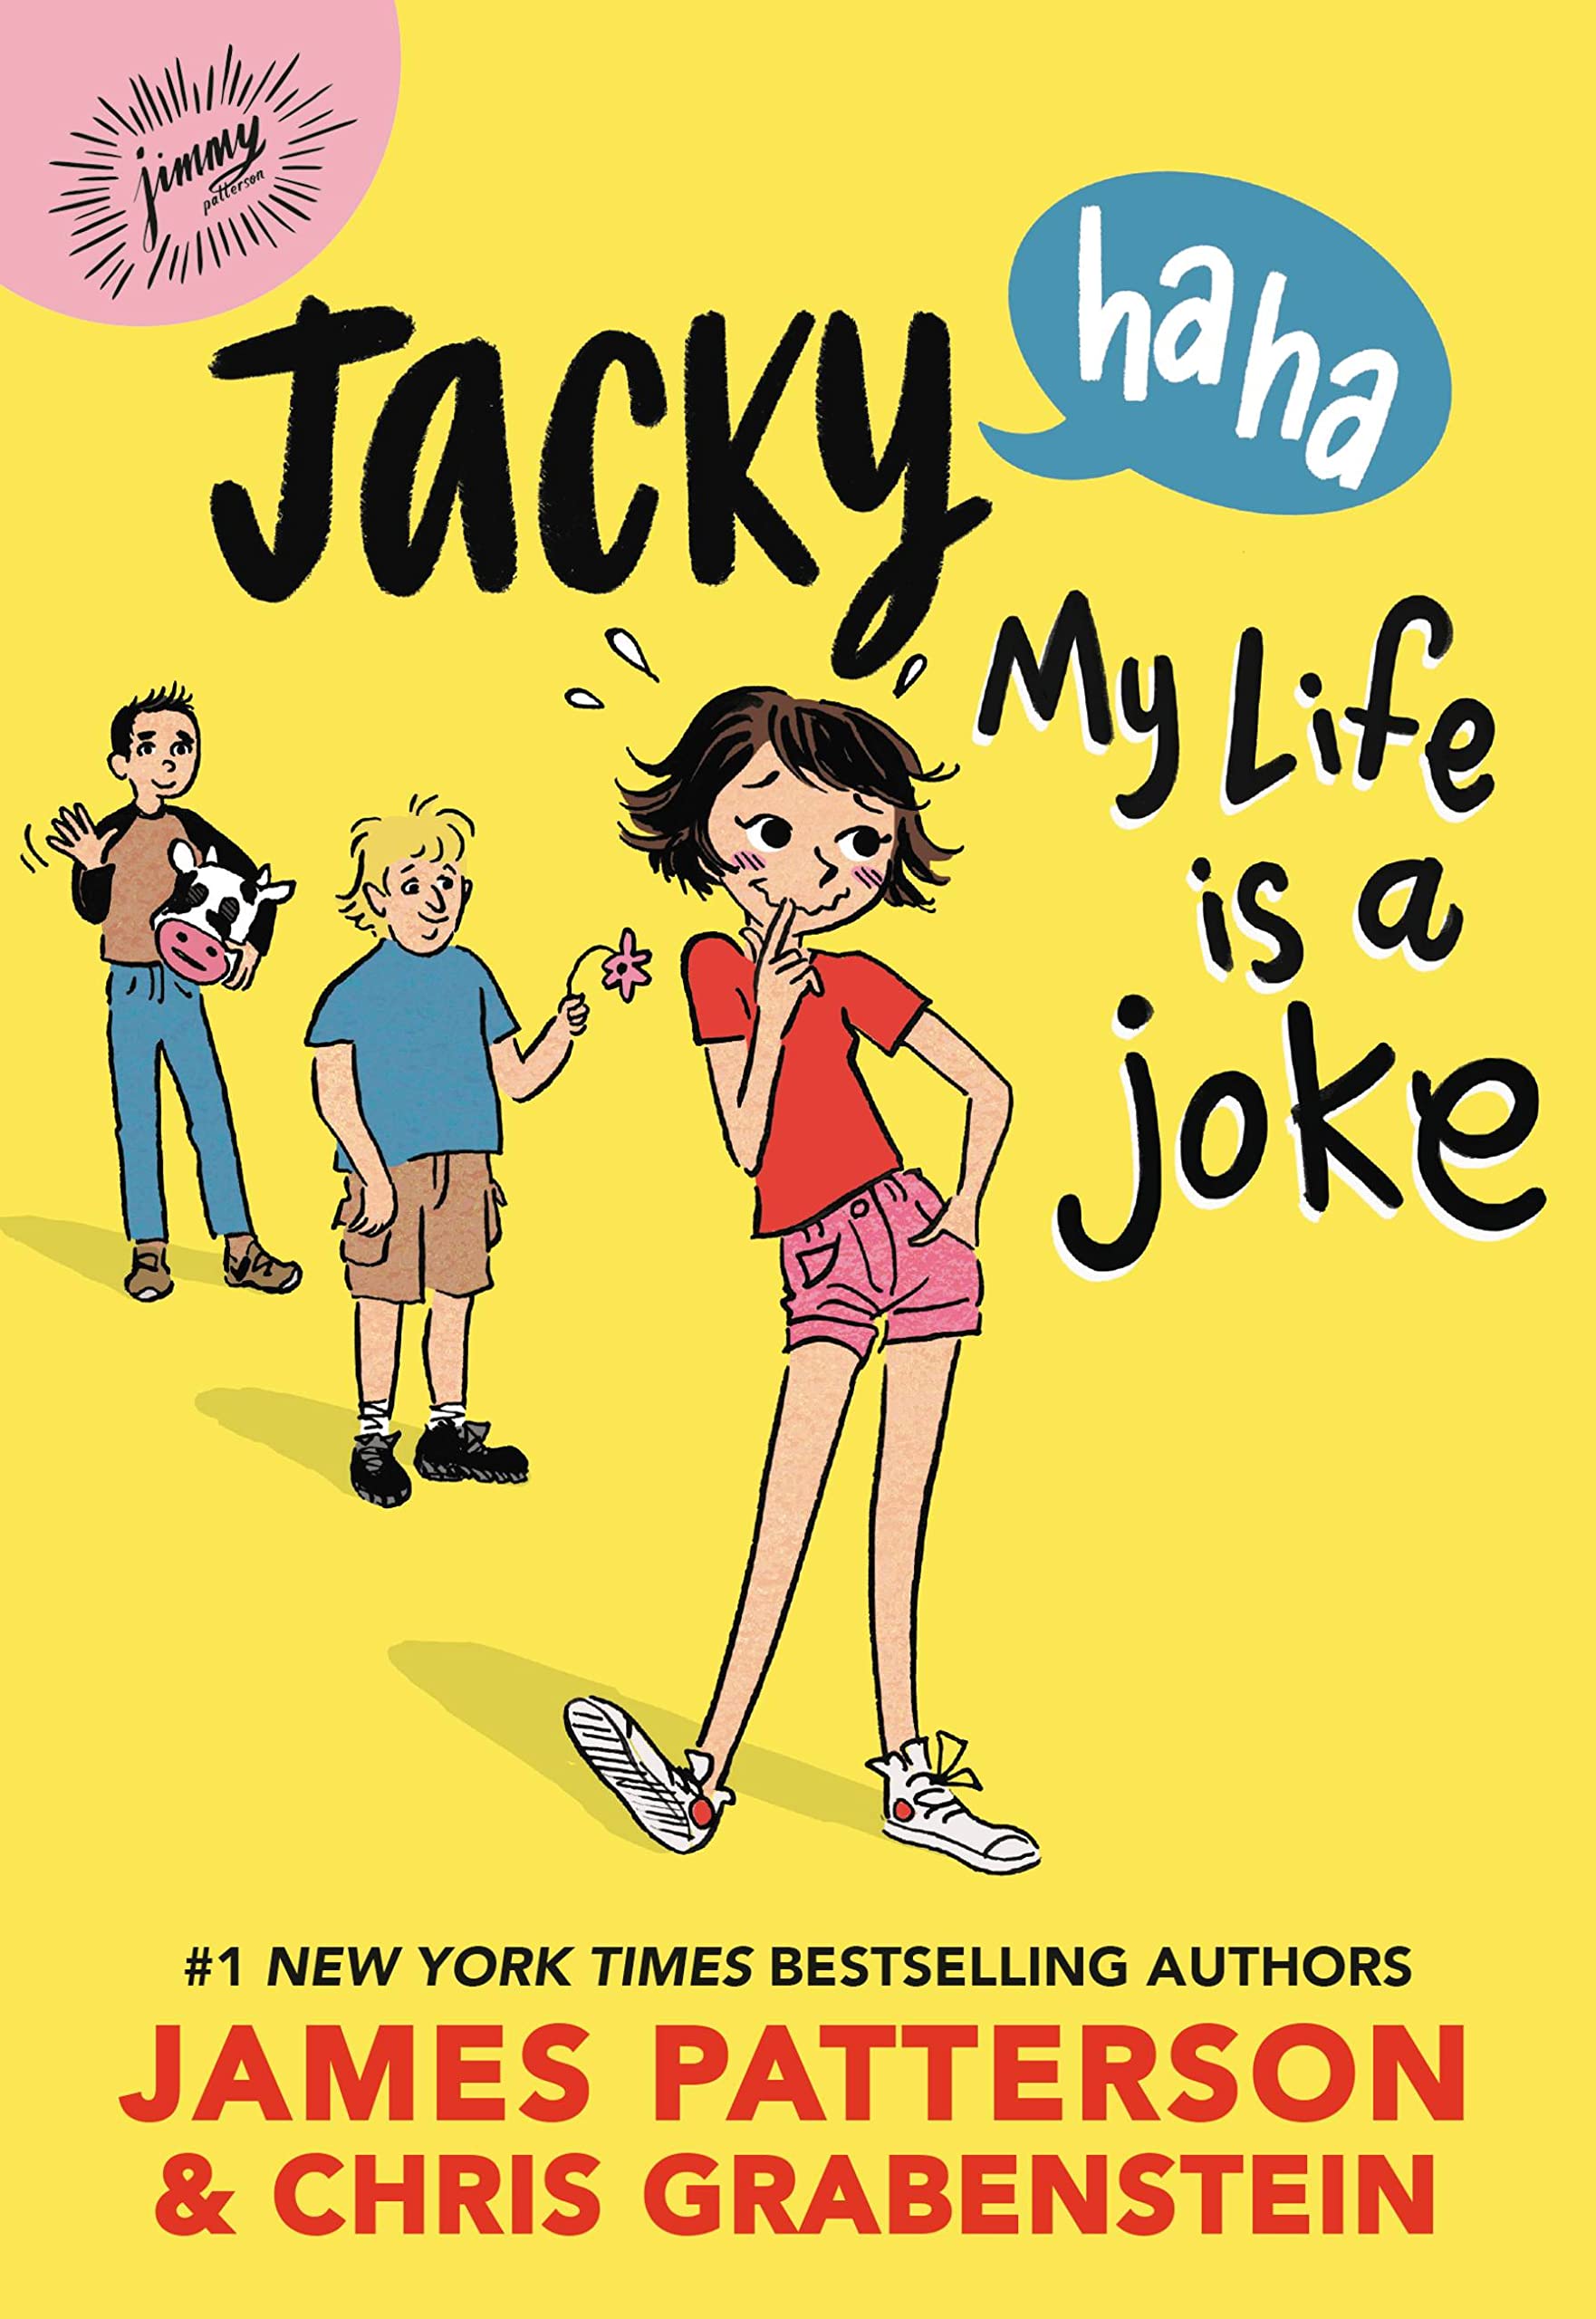 Jacky Ha-Ha: My Life Is a Joke (Jacky Ha-Ha, 2)